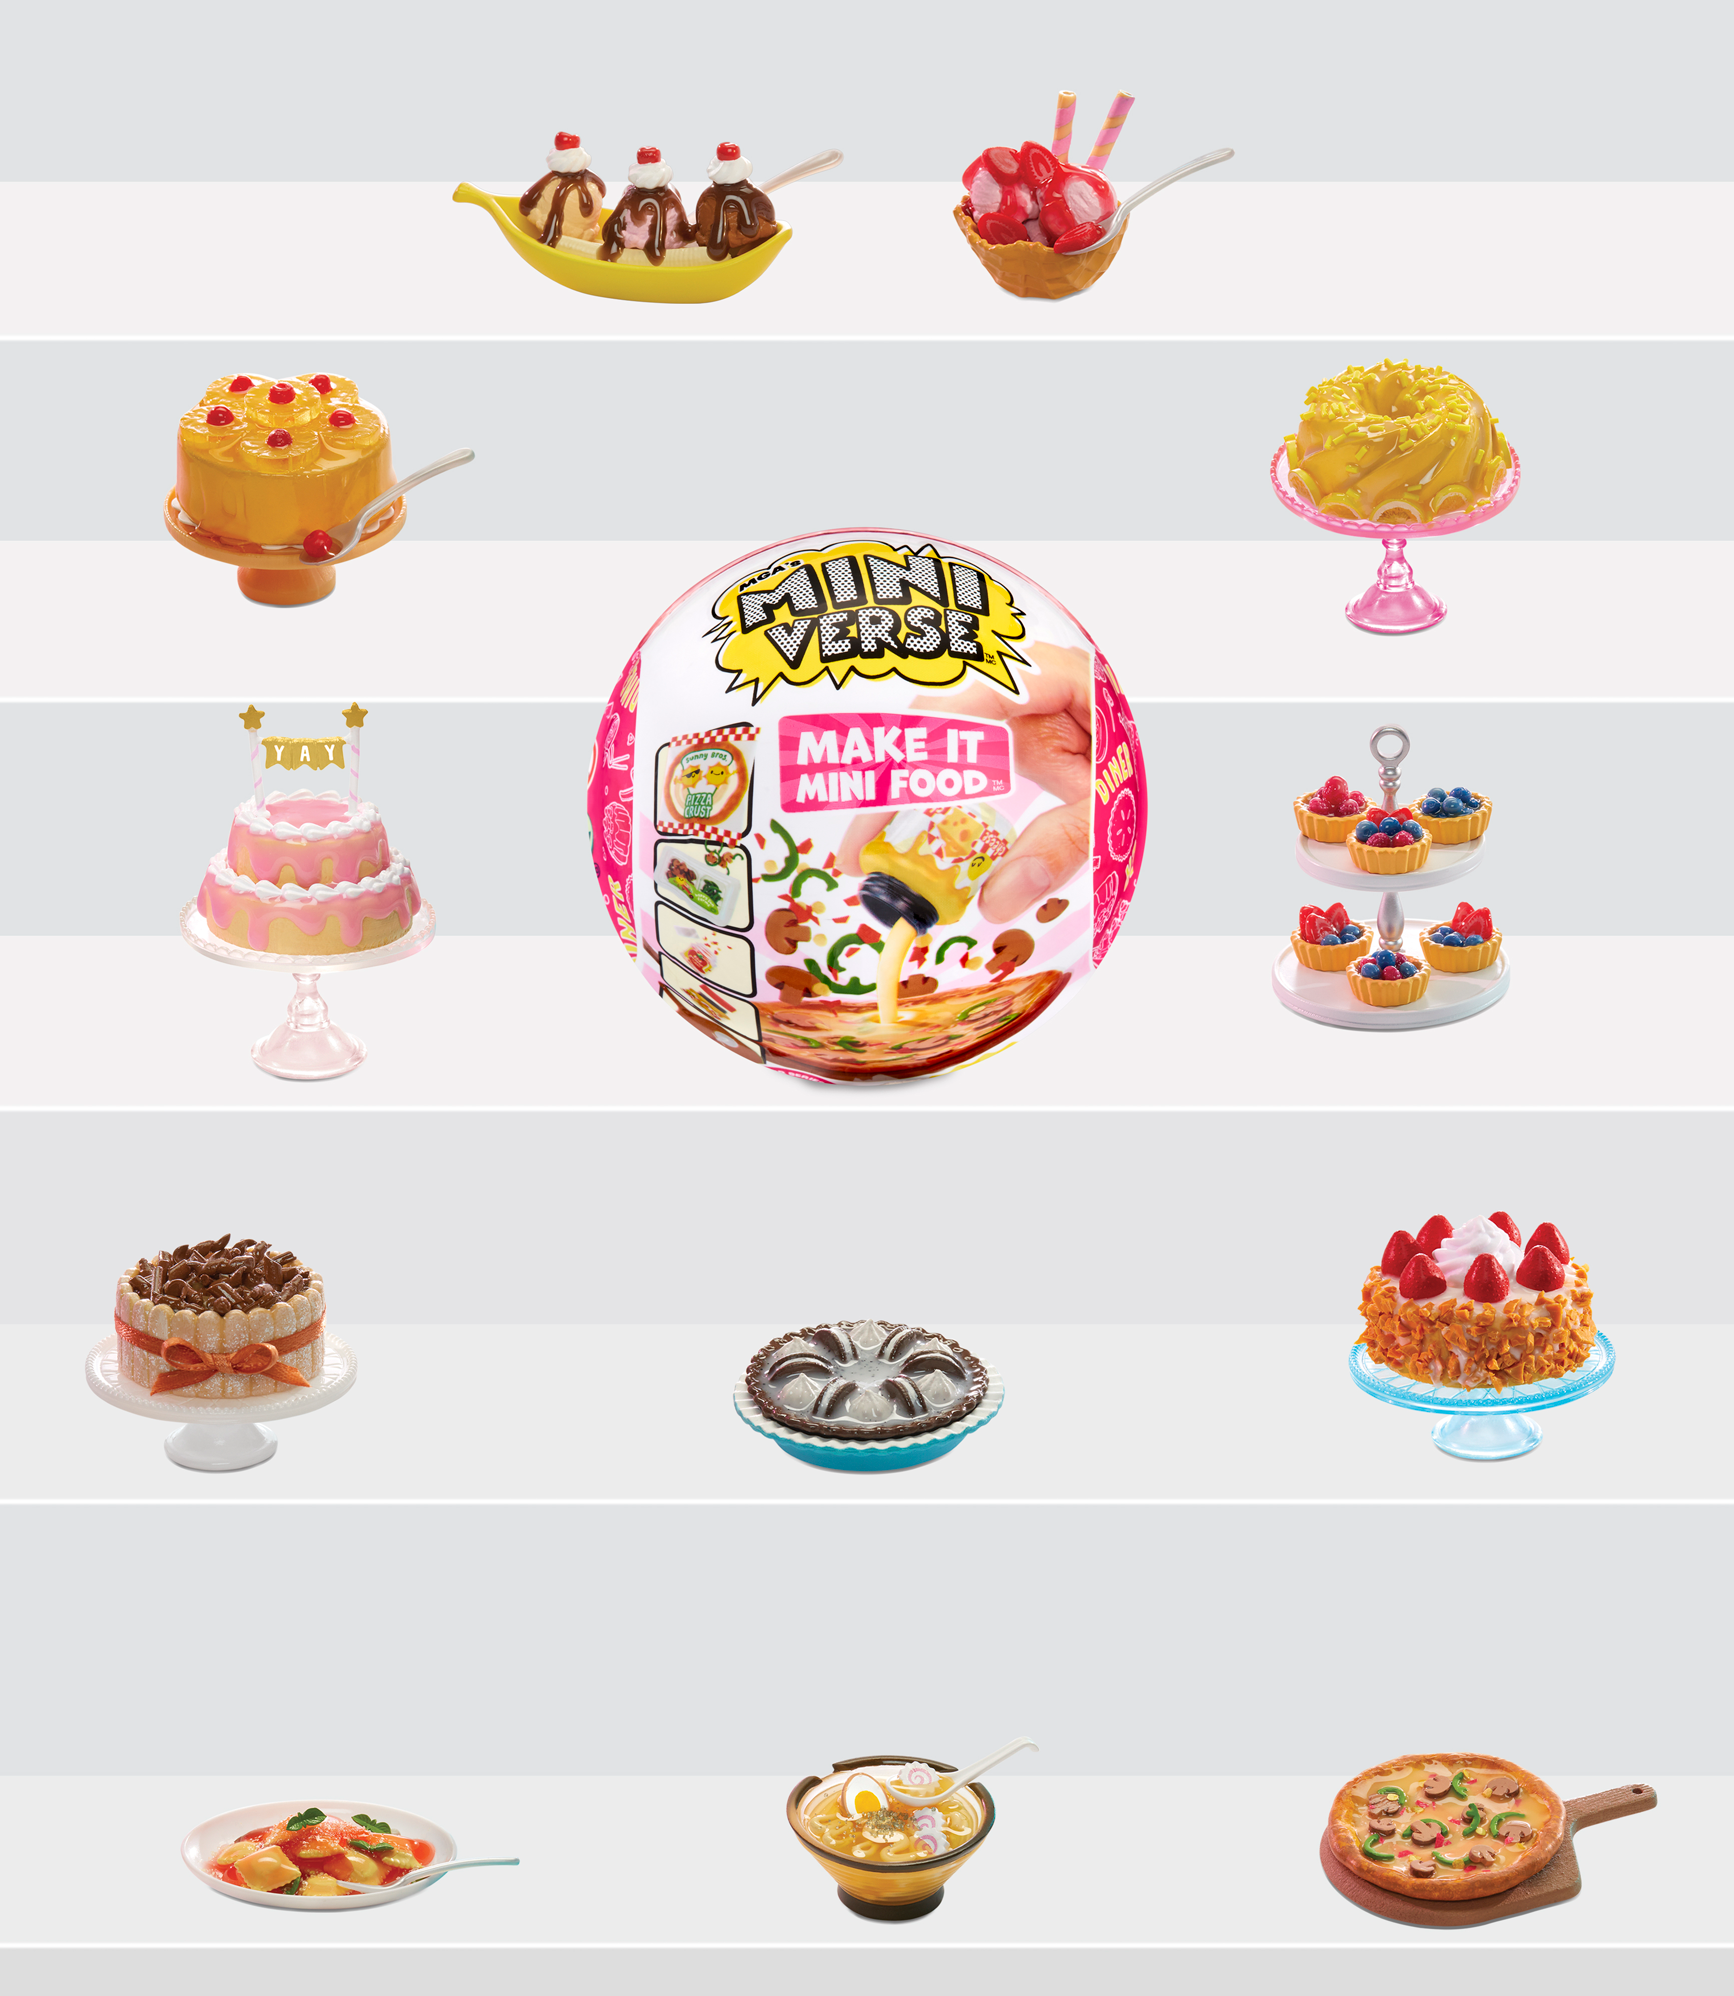 Miniverse Make It Mini Food Diner Serie 1 di MGA- Gioco di resina in una  palla